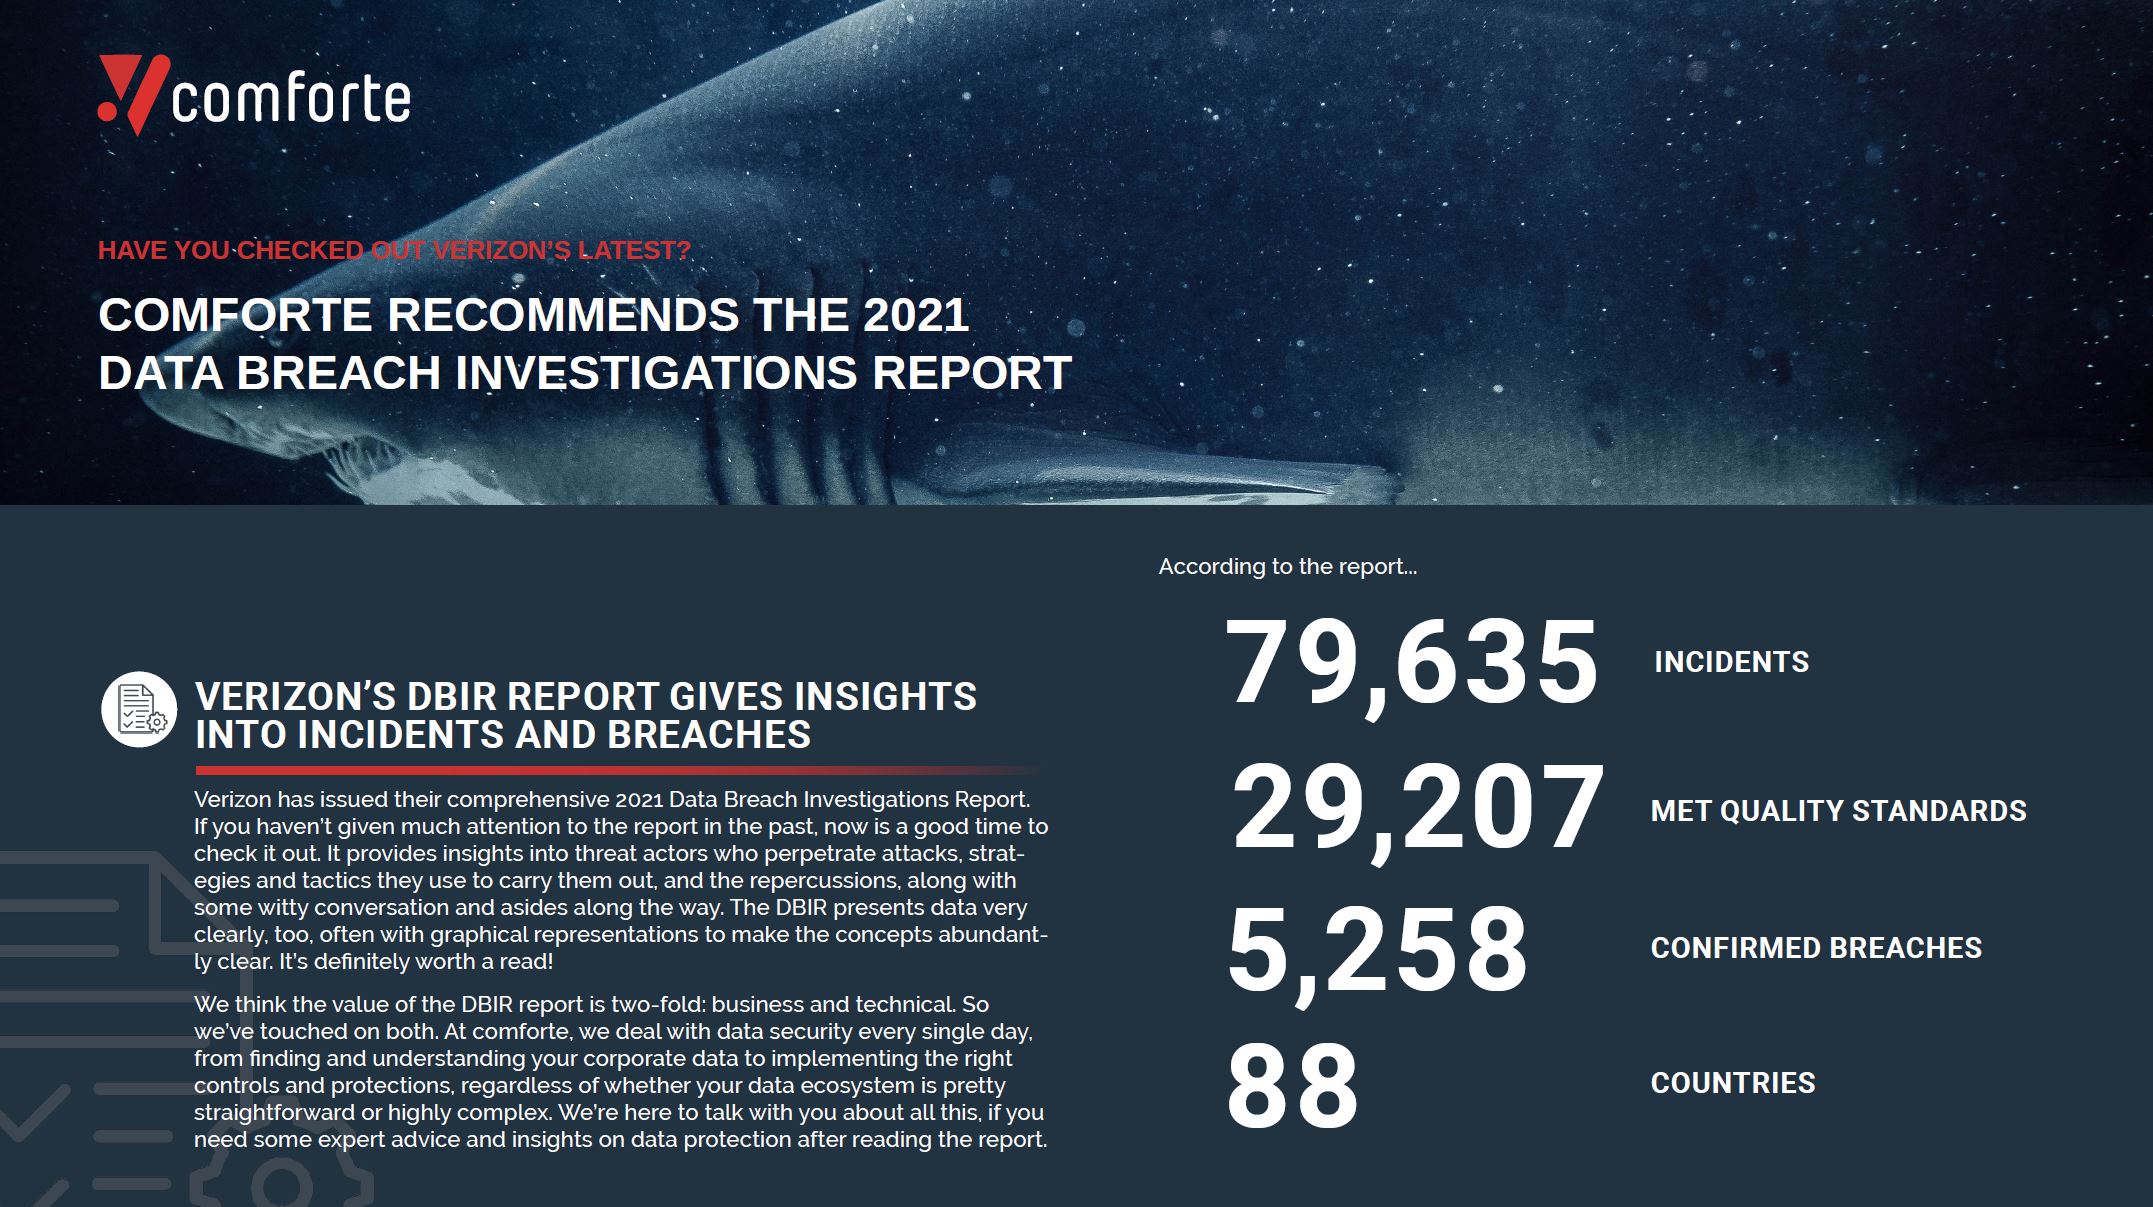 Verizon Data Breach Report comforte